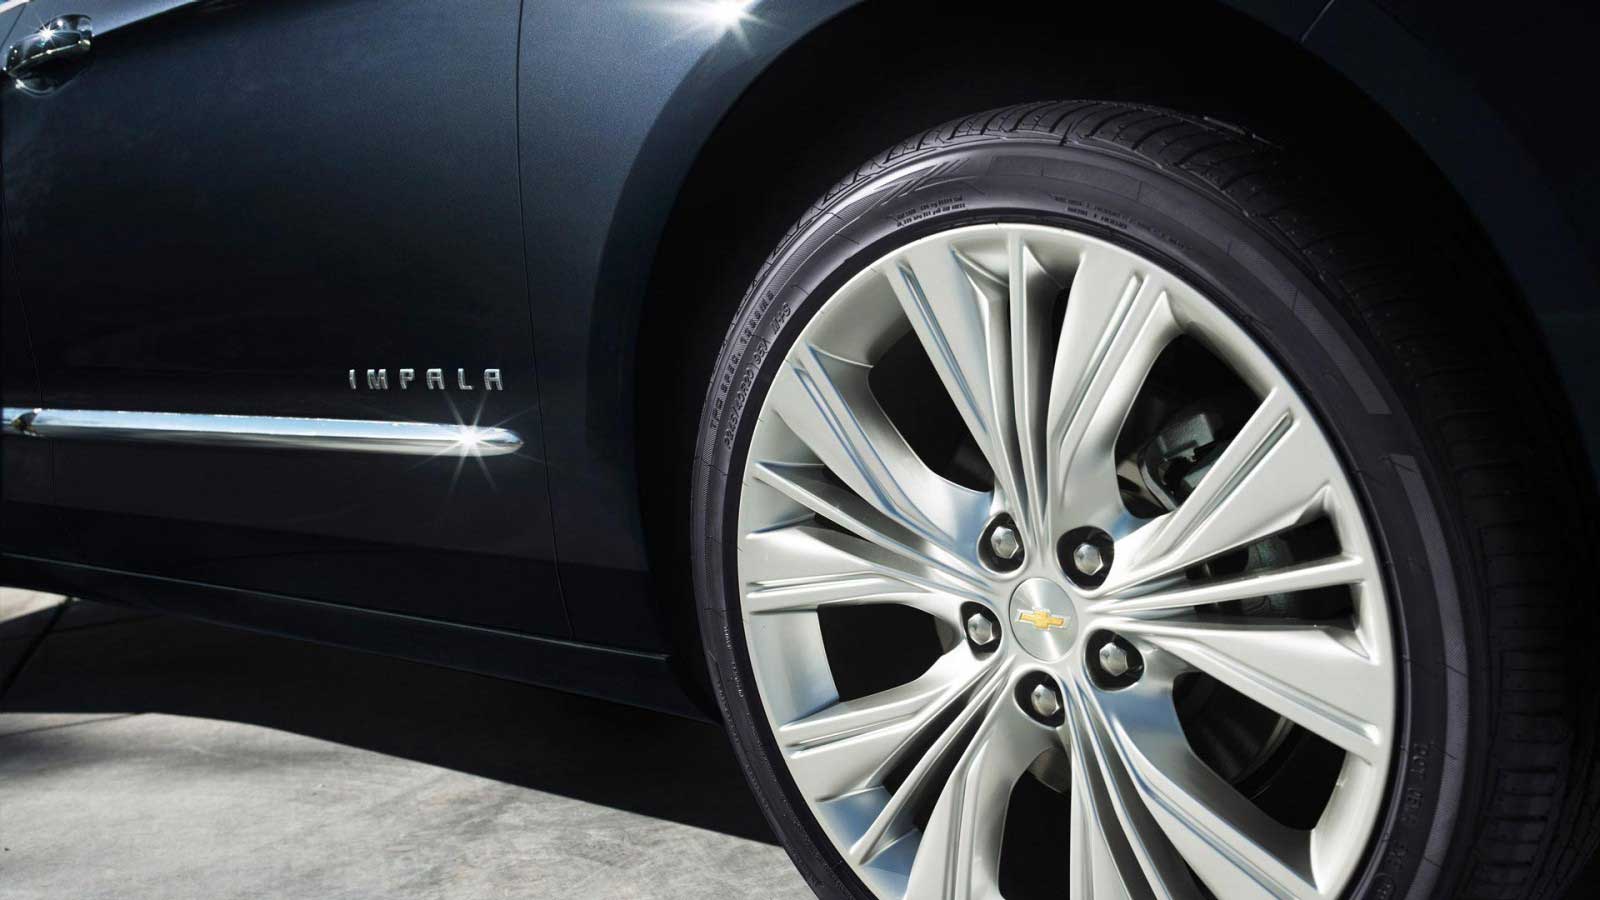 Chevrolet Impala LTZ Exterior wheel